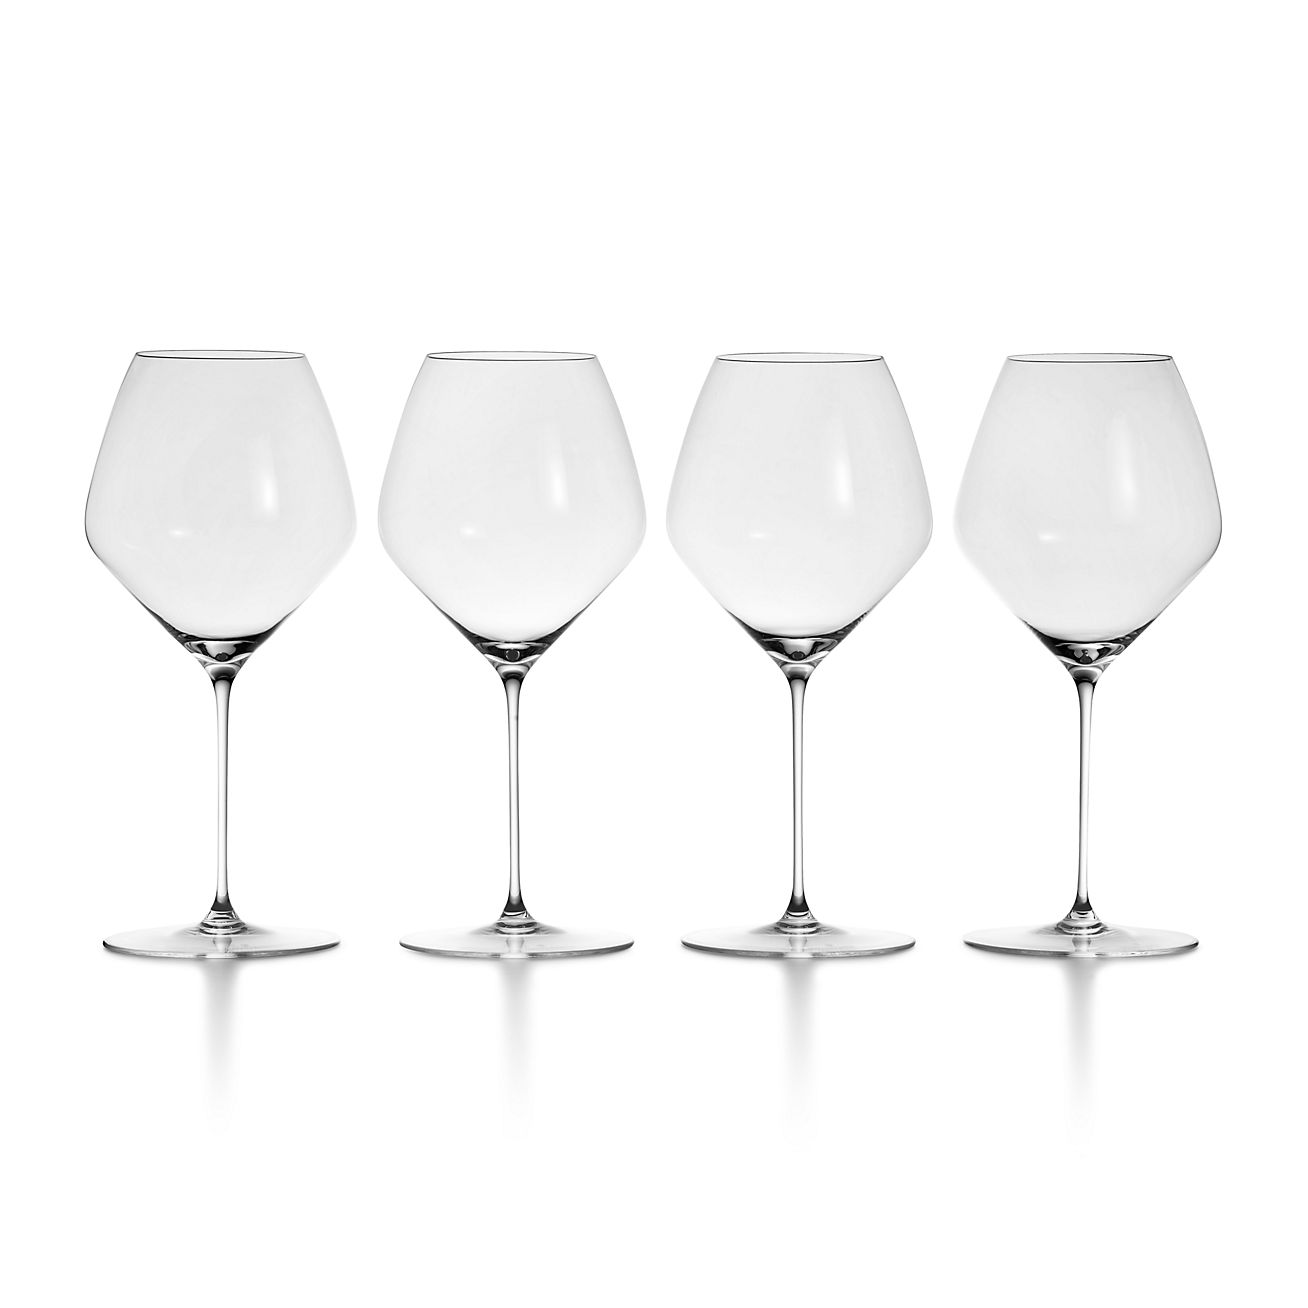 Crystal Wine Glasses, Red Wine Glasses, White Wine Glass, Crystal  Glassware Online India, Best Wine Glasses